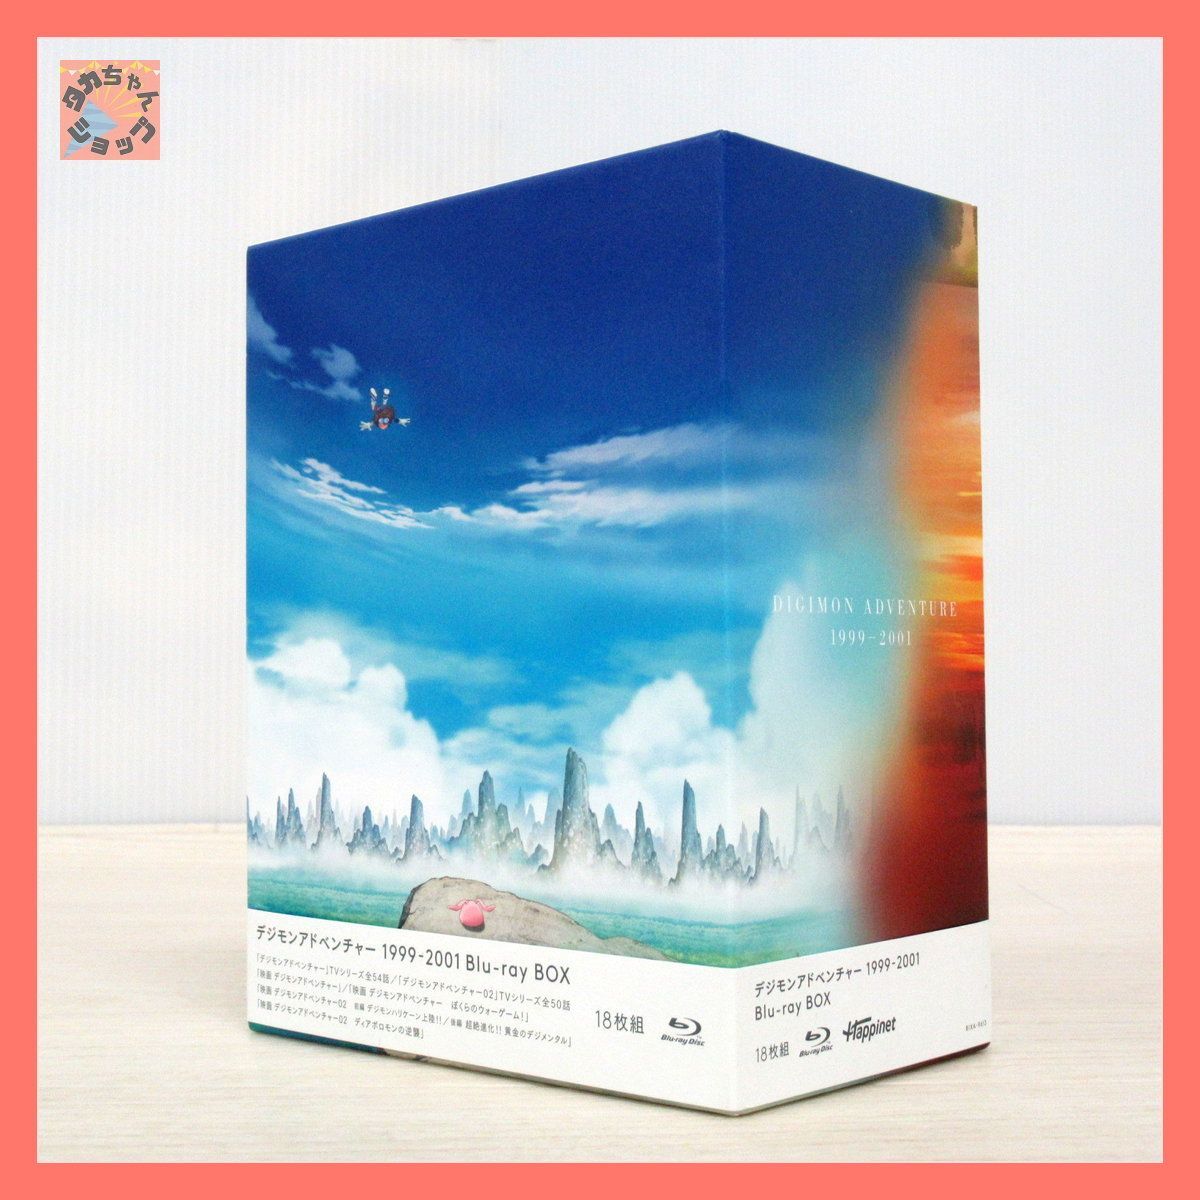 デジモンアドベンチャー 1999-2001 Blu-ray DVD BOX - アニメ